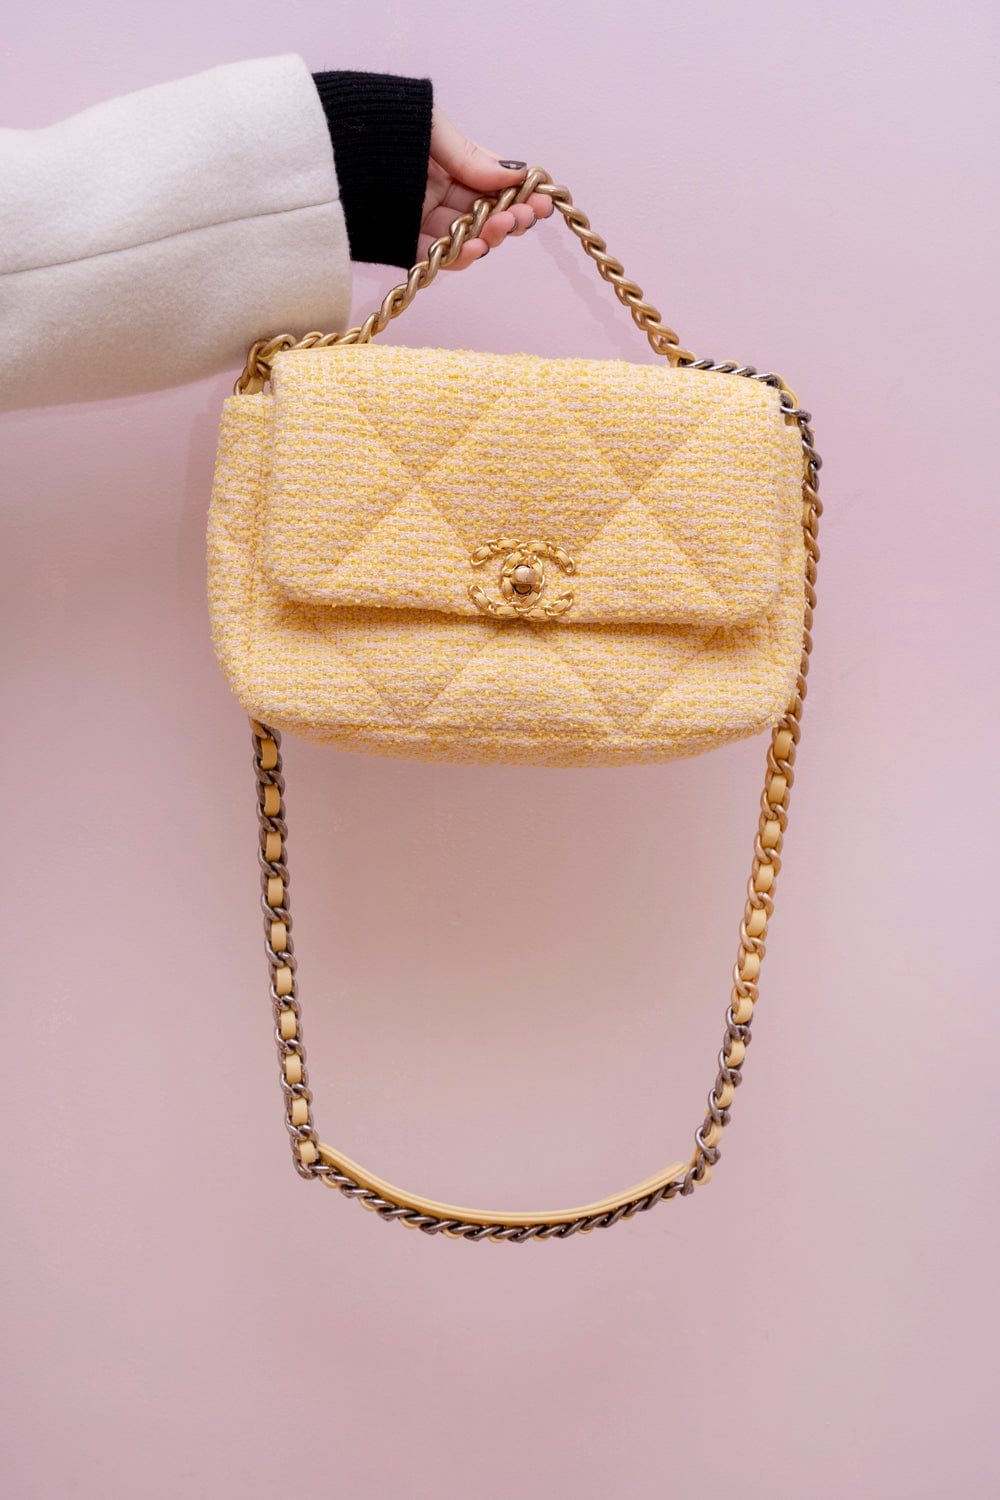 Chanel Yellow Tweed Flap Bag at Jill's Consignment